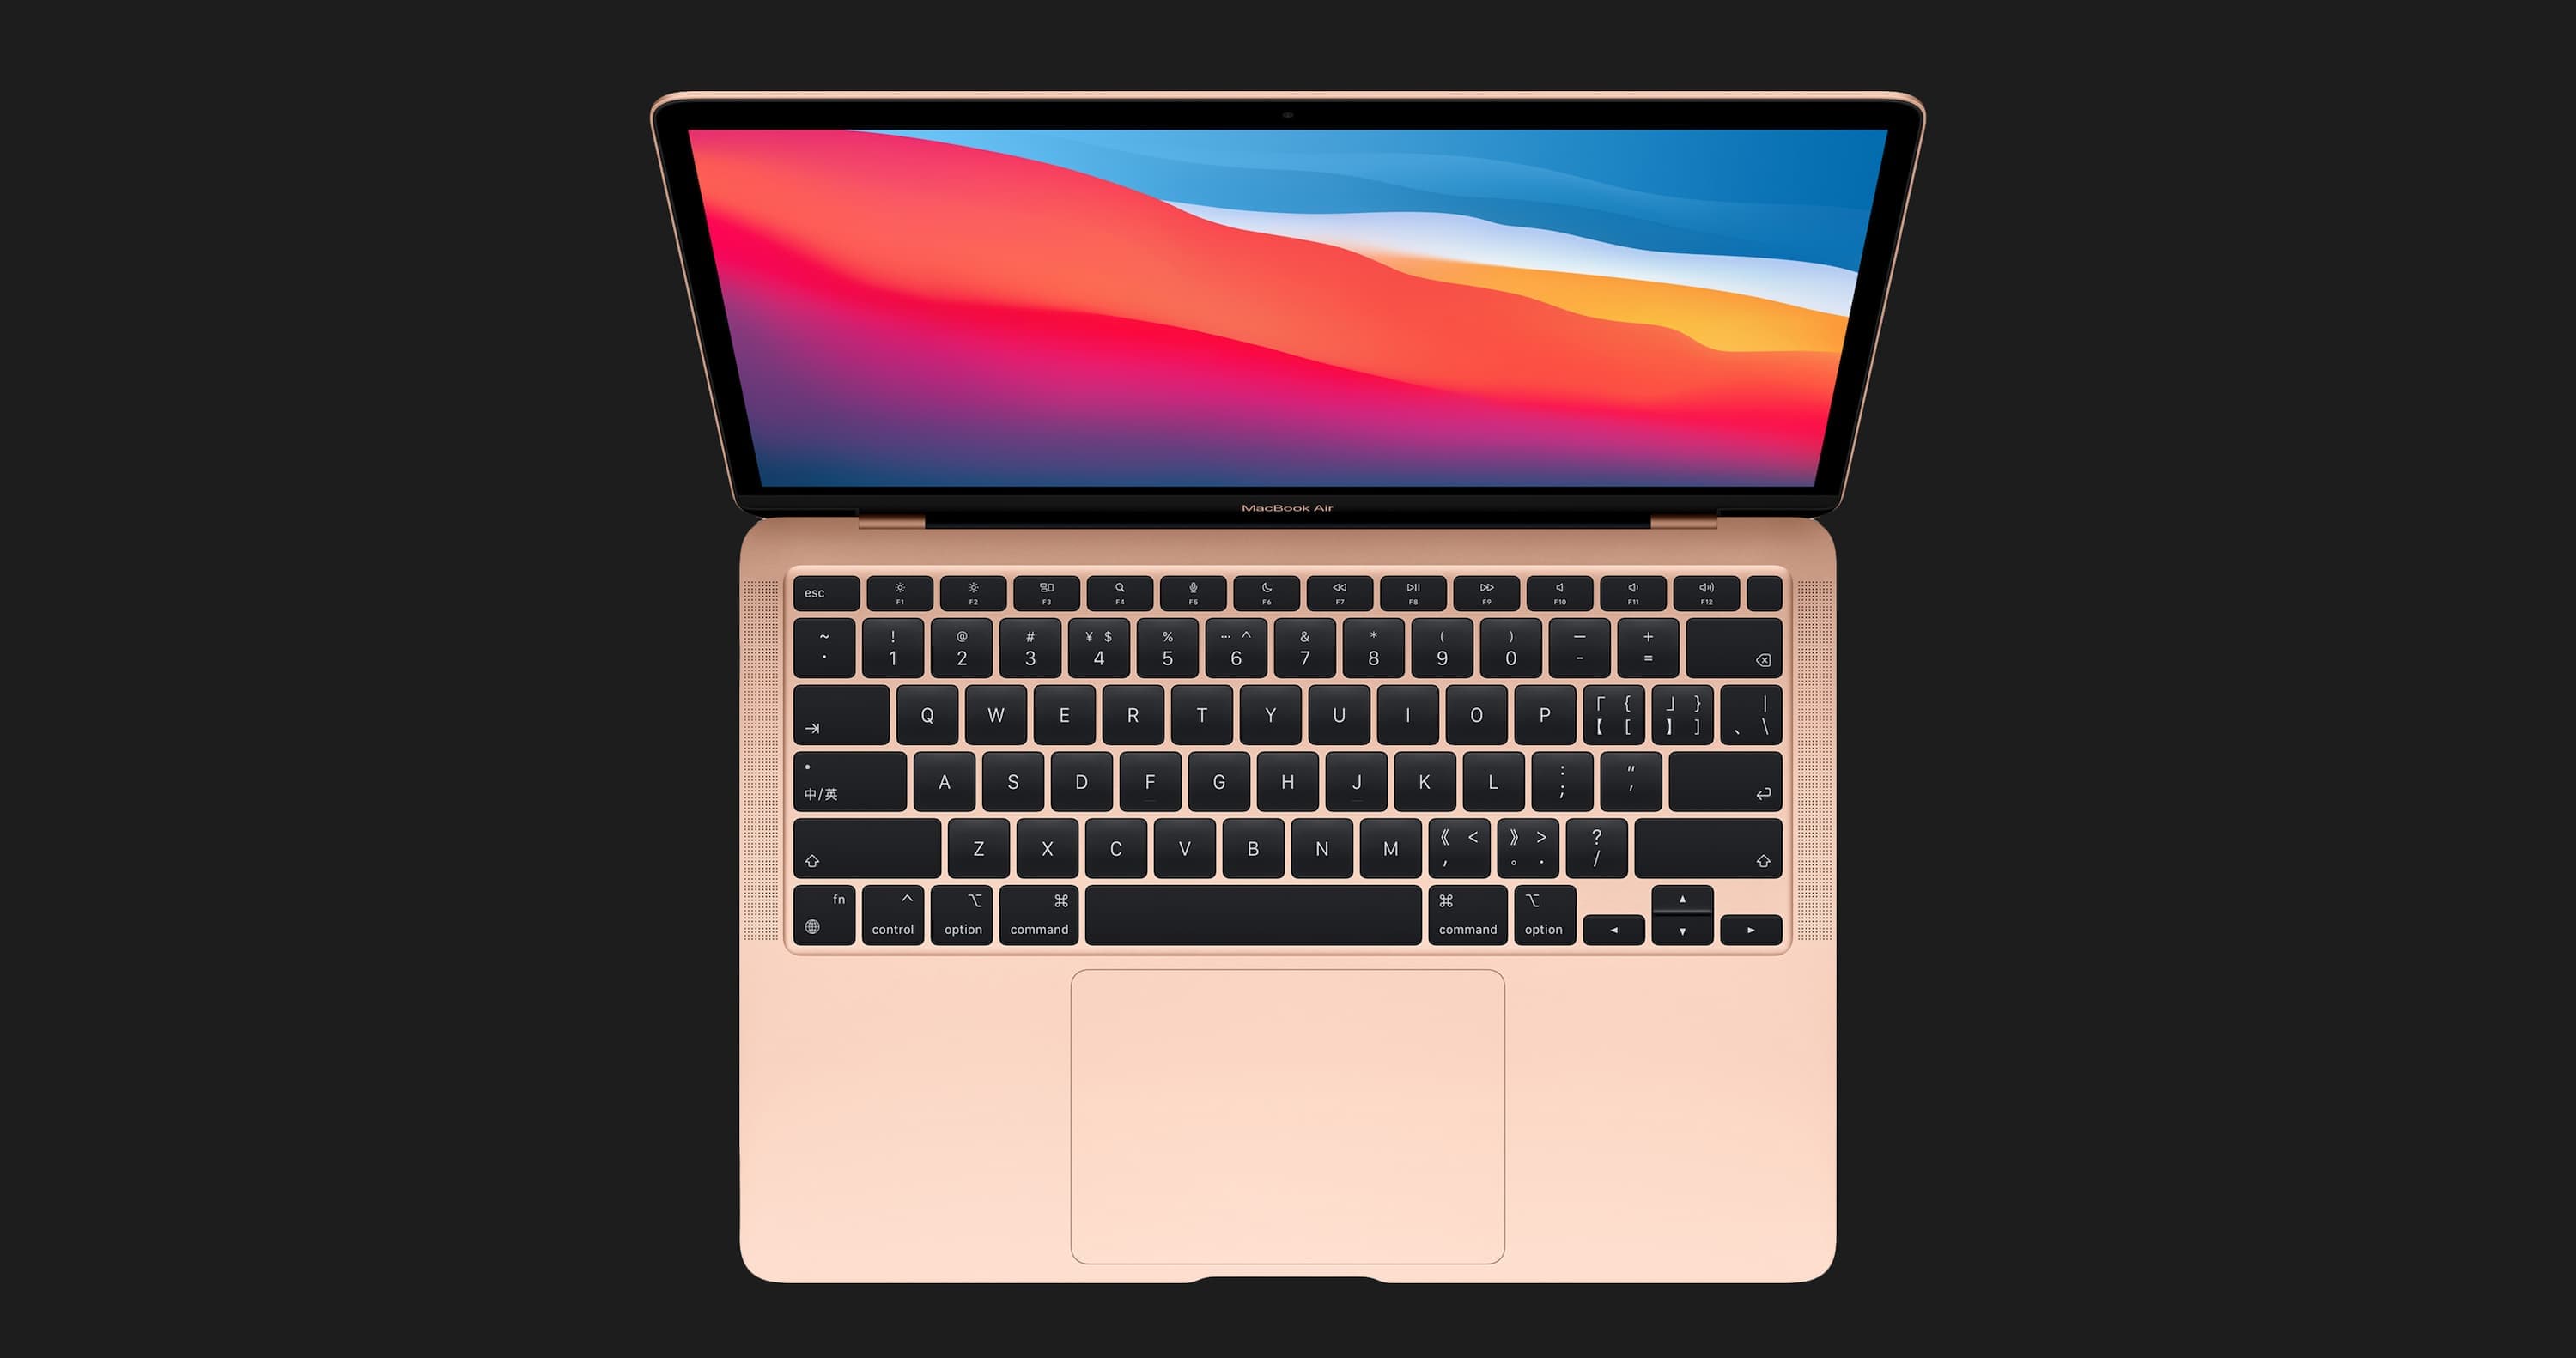 б/у Apple MacBook Air 13, 2020 (256GB) (MWTJ2) (Идеальное состояние)